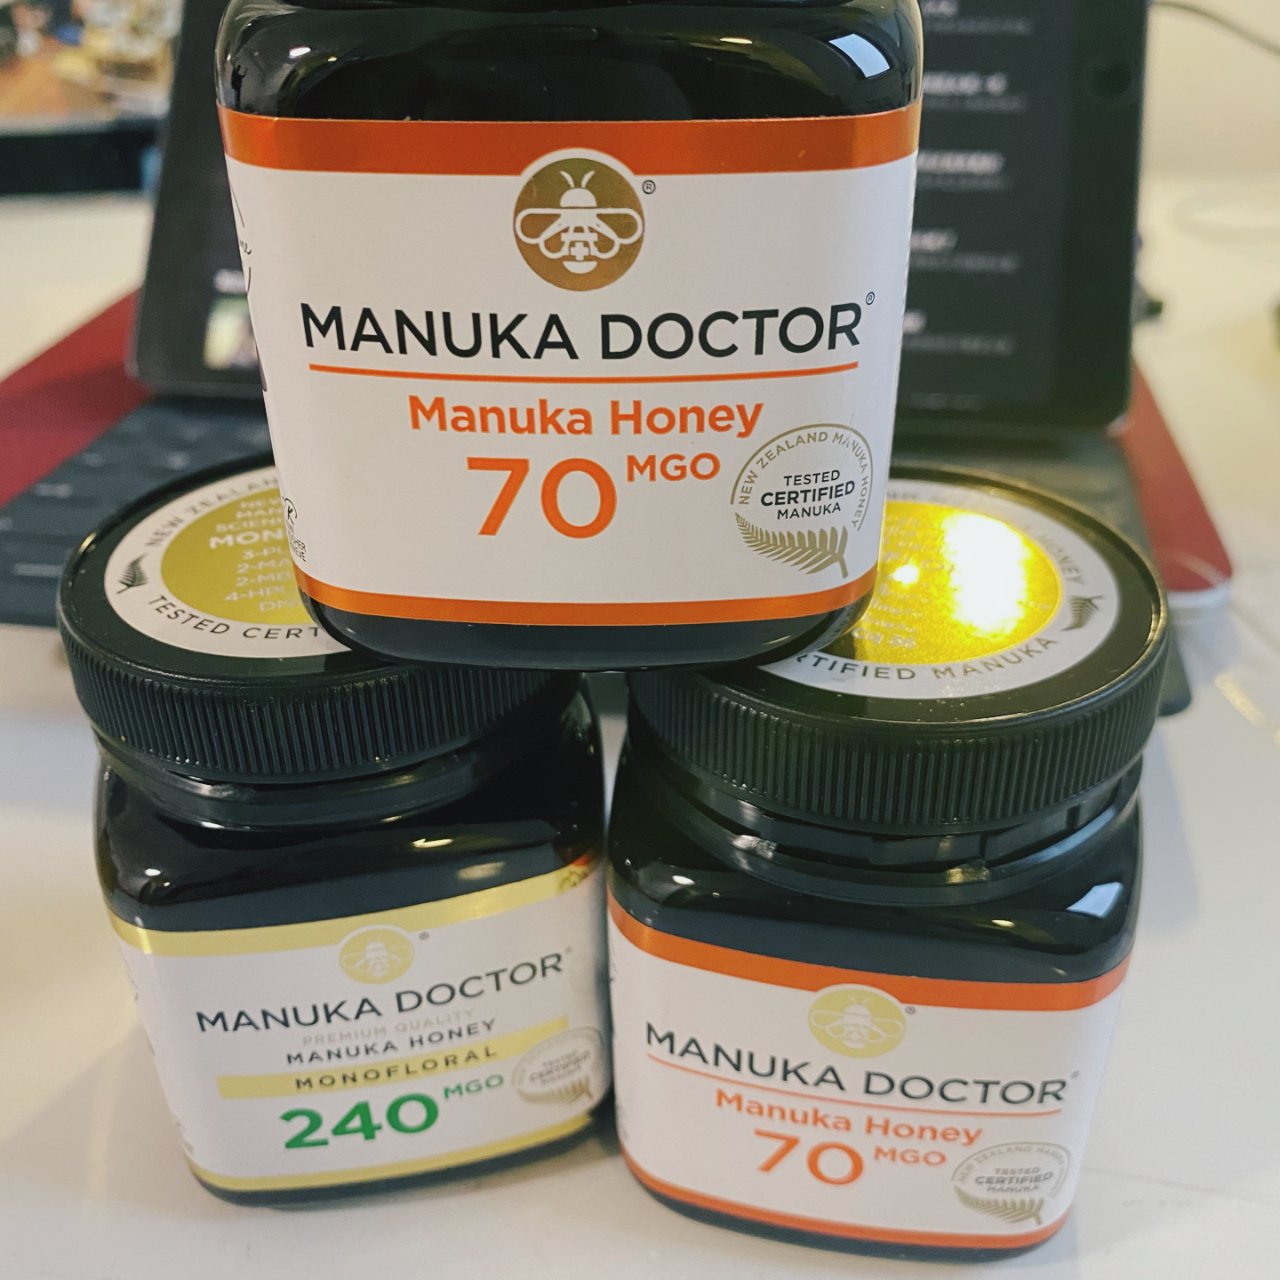 Manuka Doctor,Manuka蜂蜜